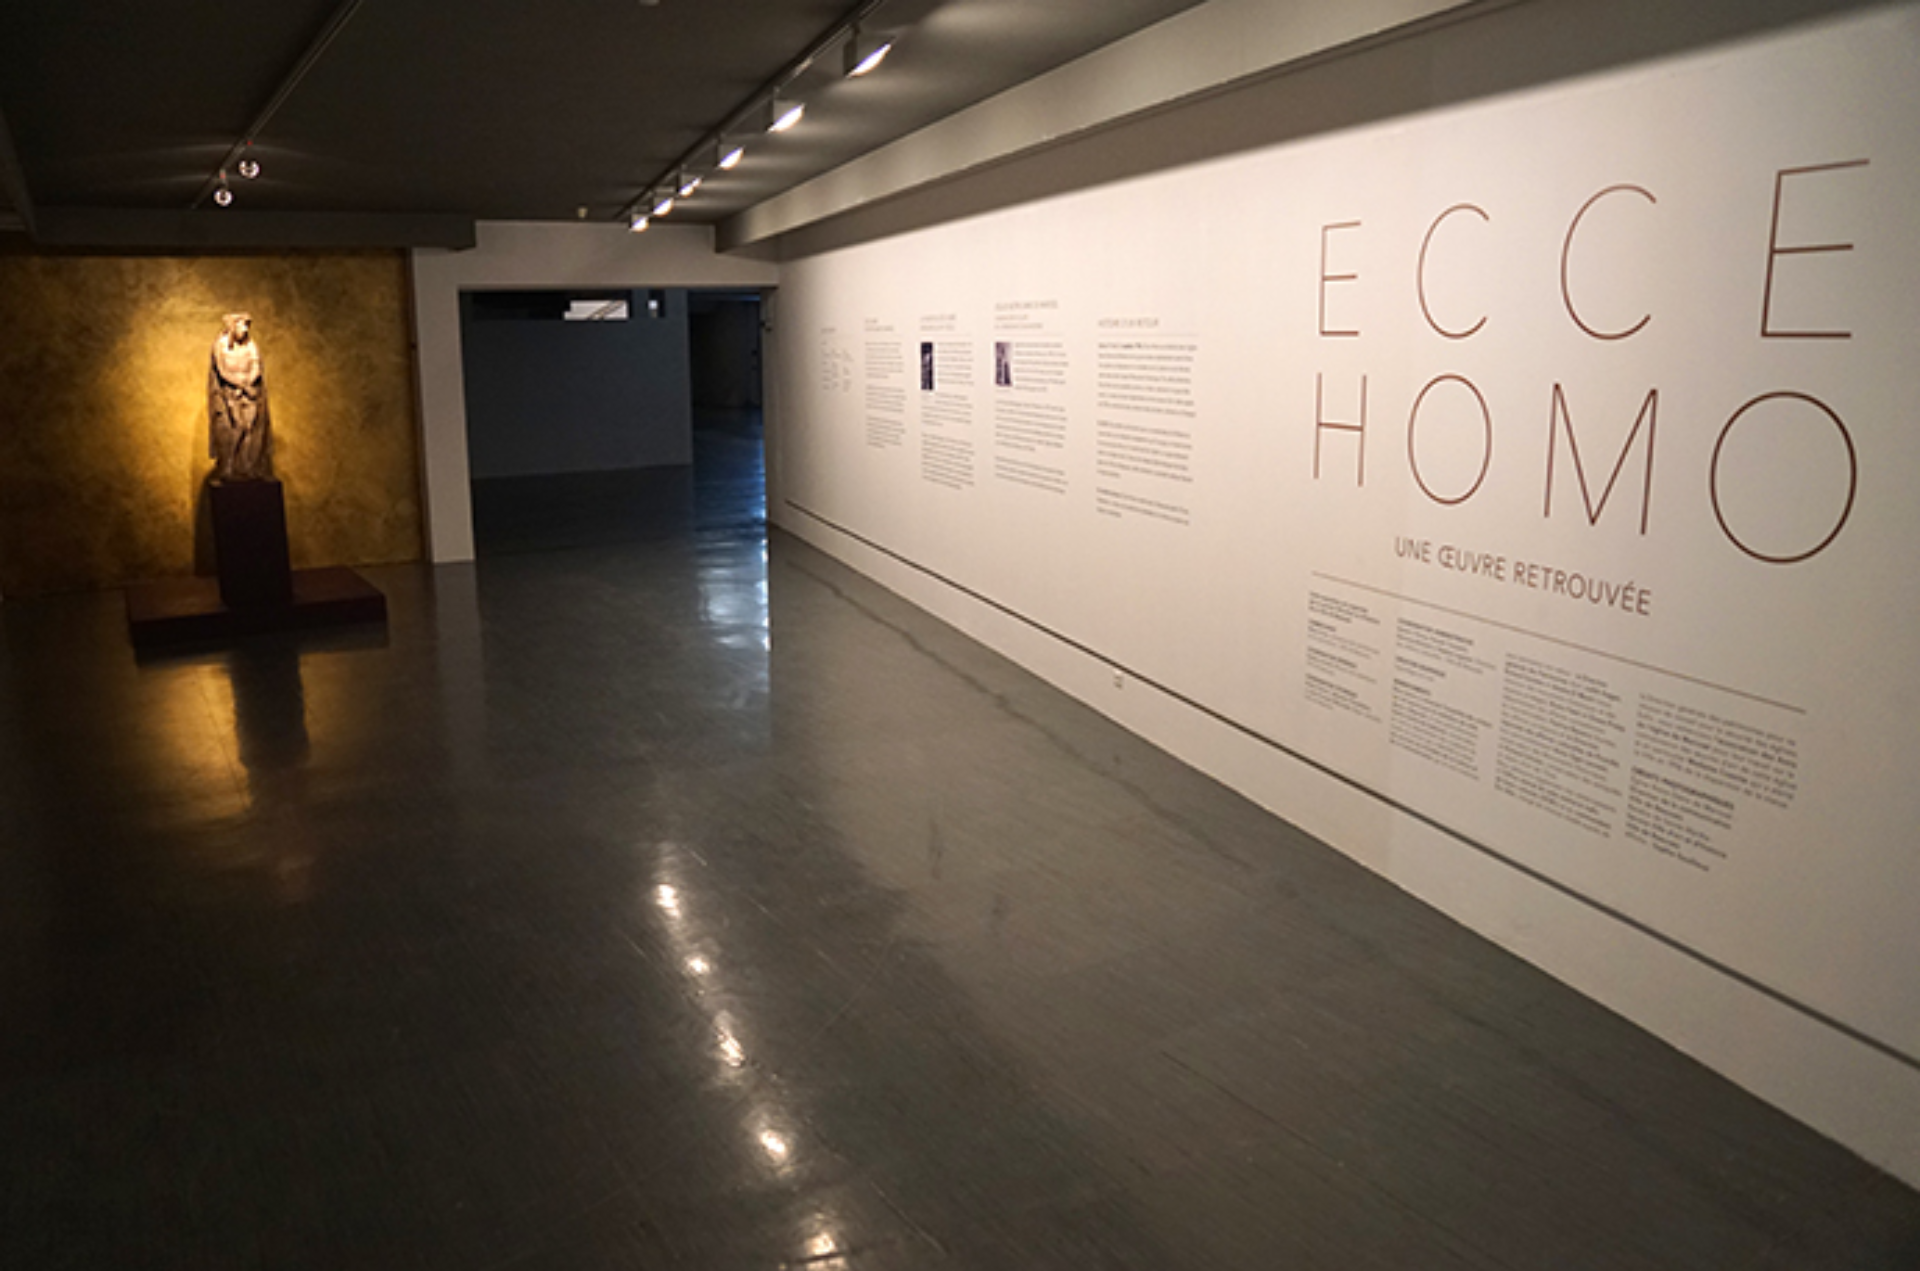 Image presenting the project Ecce Homo<br>Une œuvre retrouvée